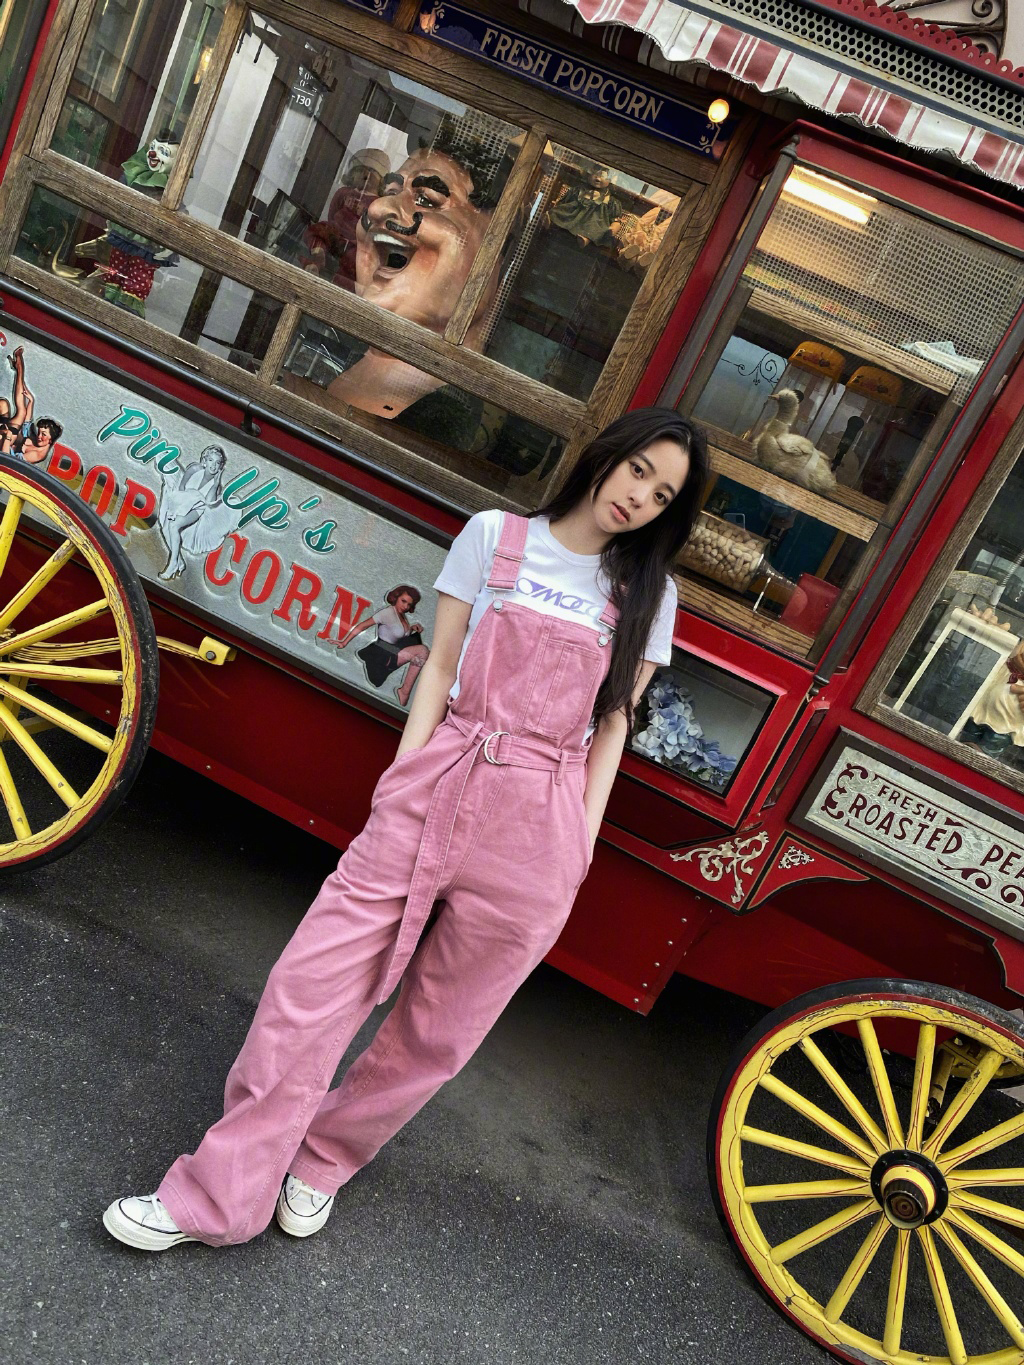 欧阳娜娜可爱粉色吊带连体牛仔裤街拍生活照片第1张